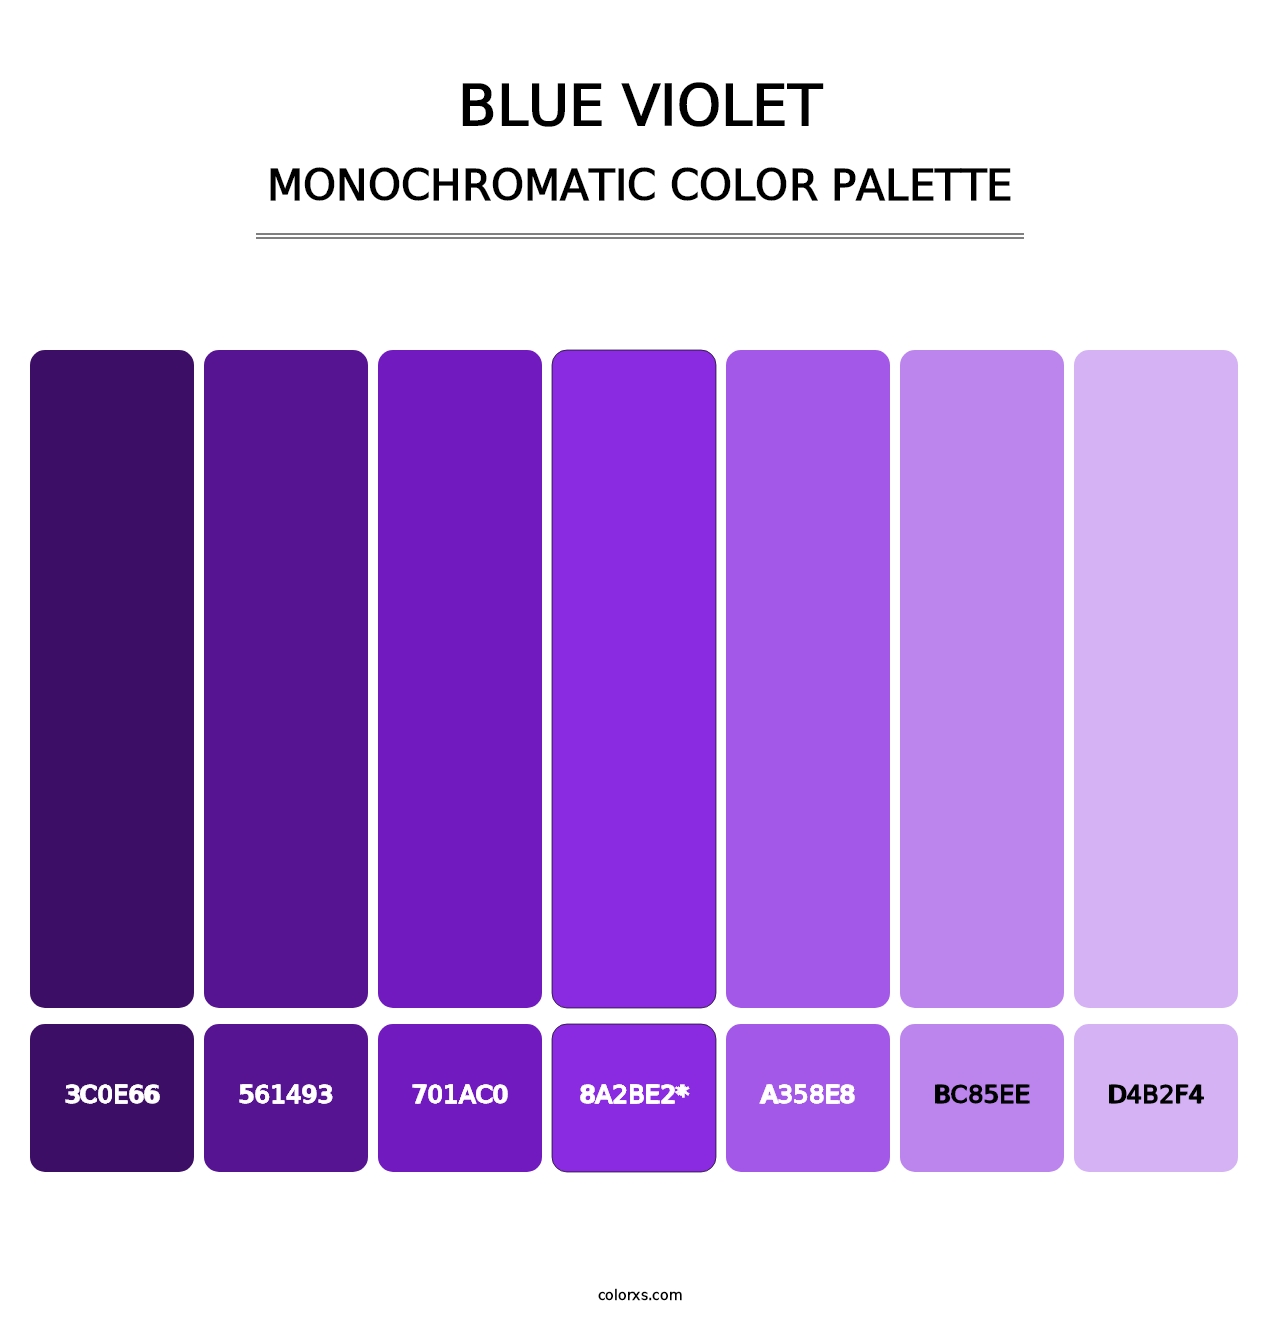 Blue Violet - Monochromatic Color Palette